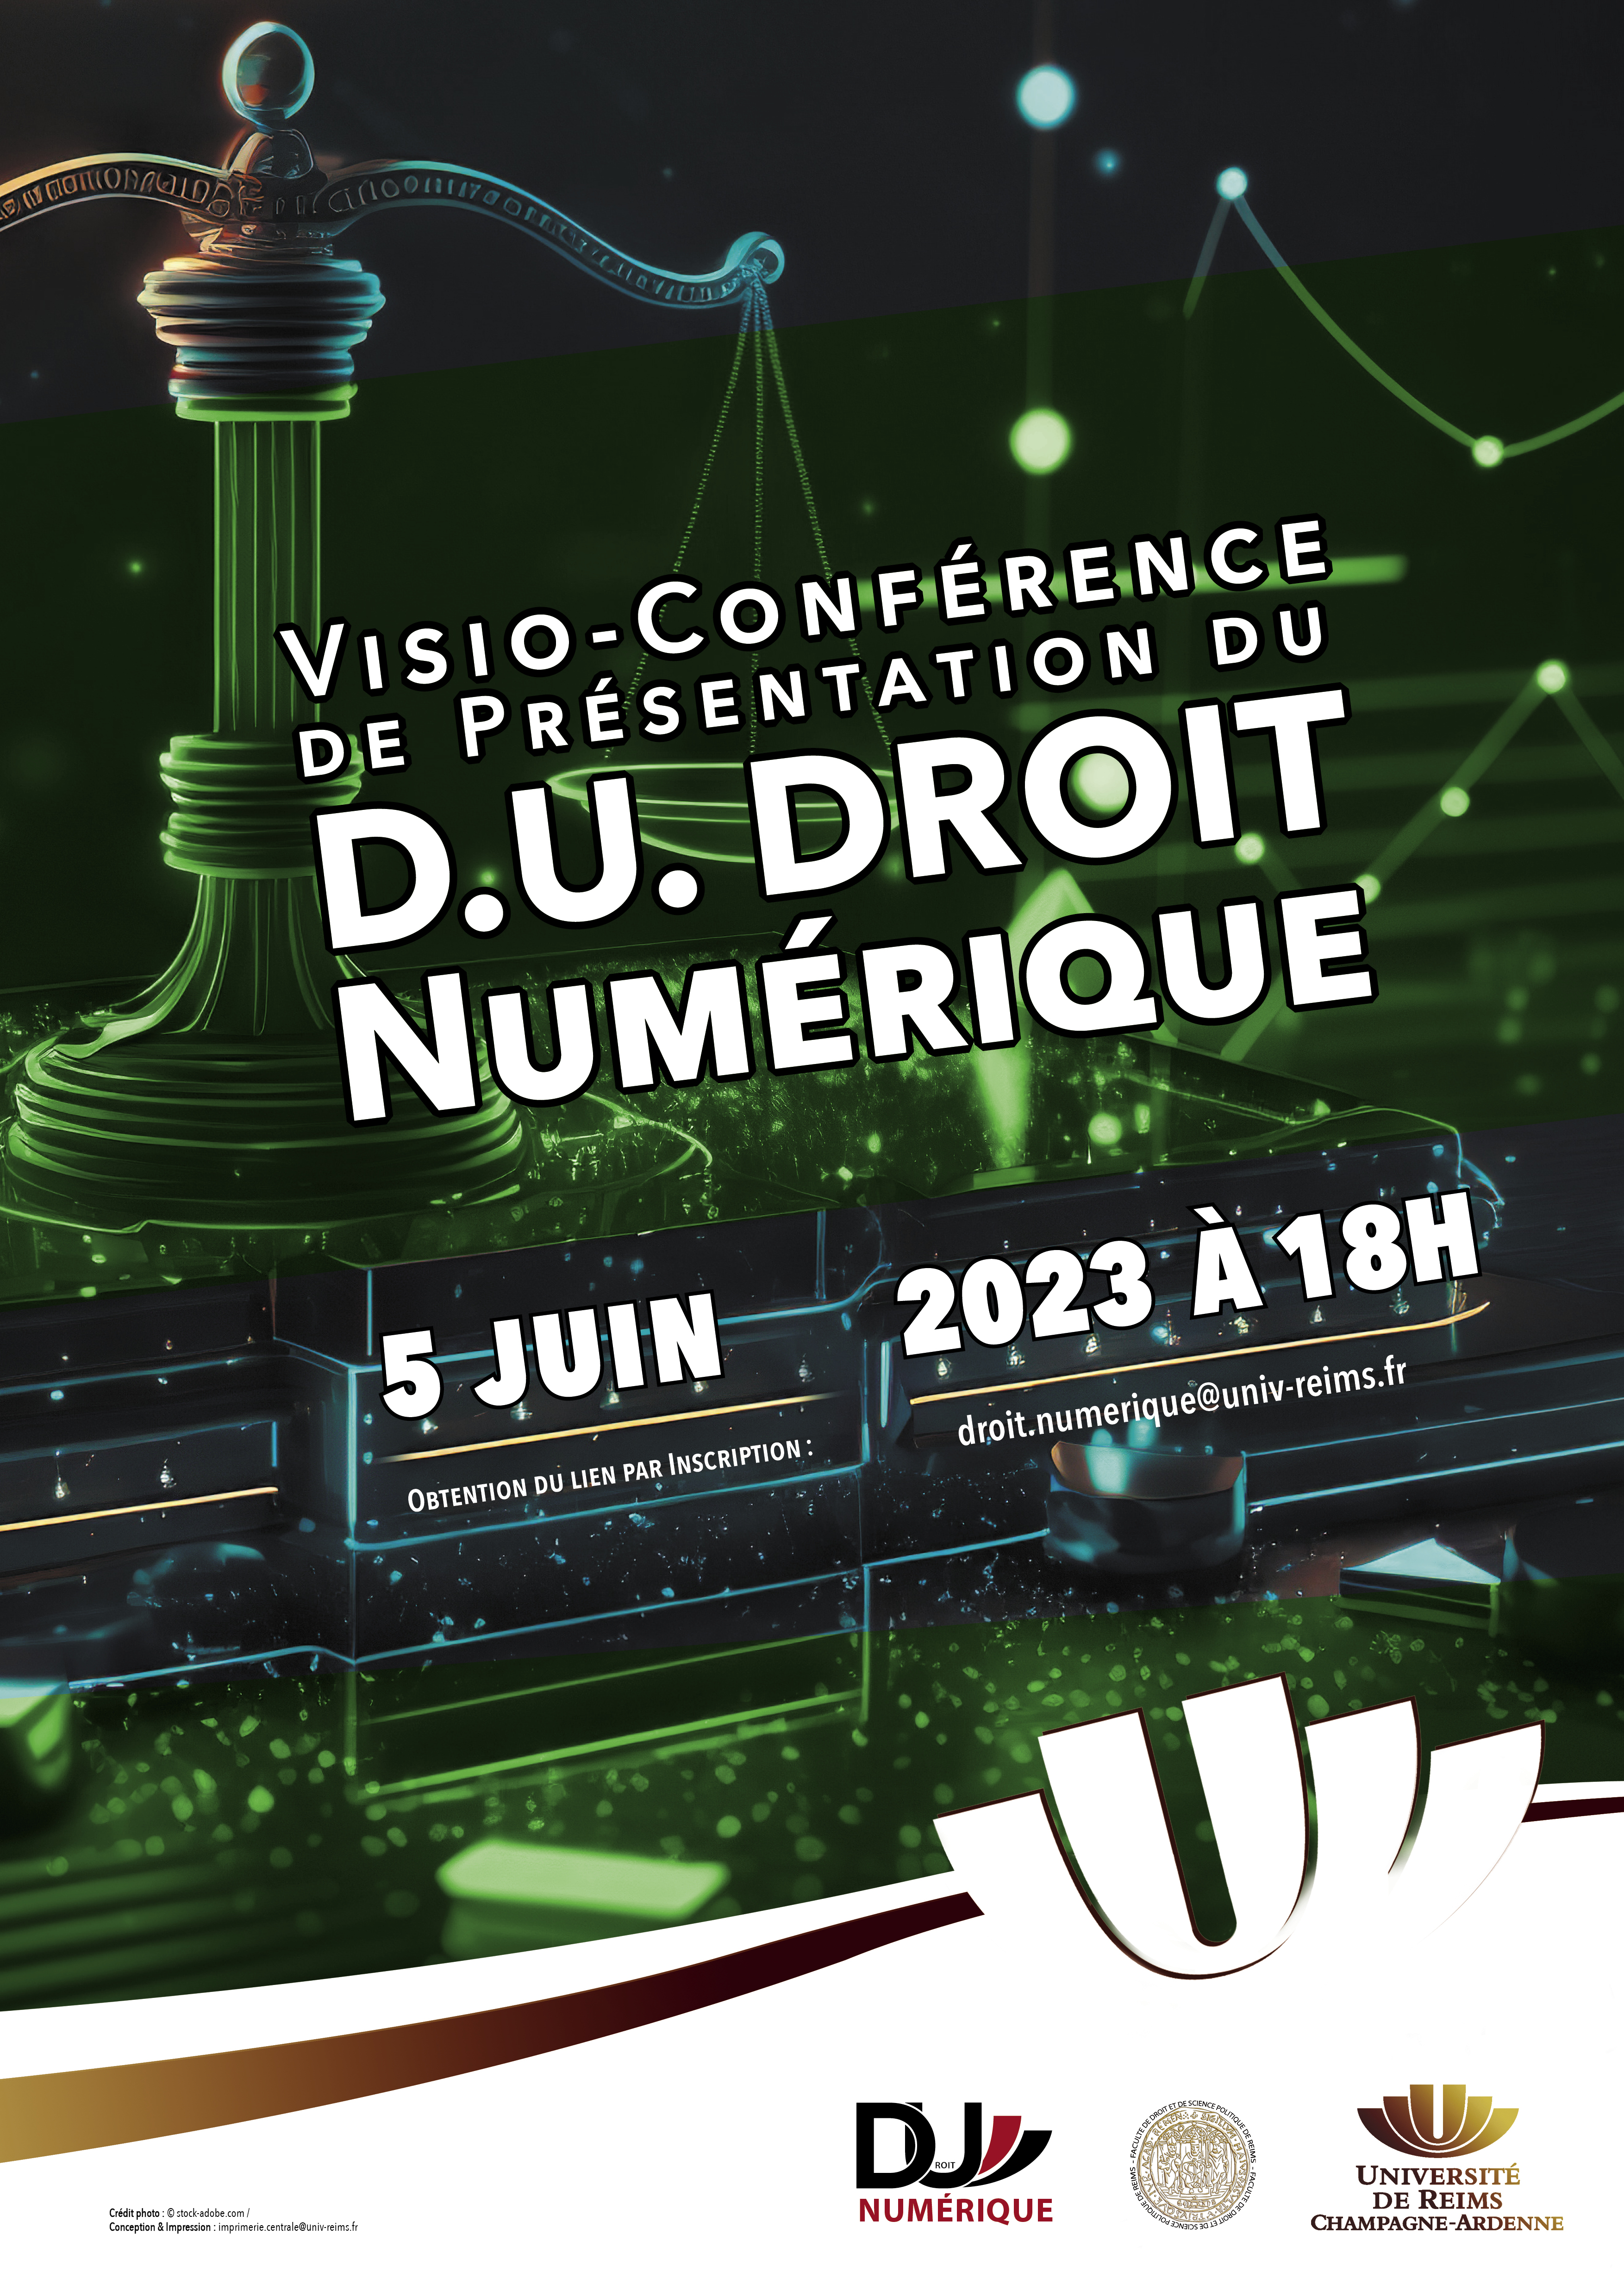 Visio-Conférence de présentation du DU Droit du Numérique